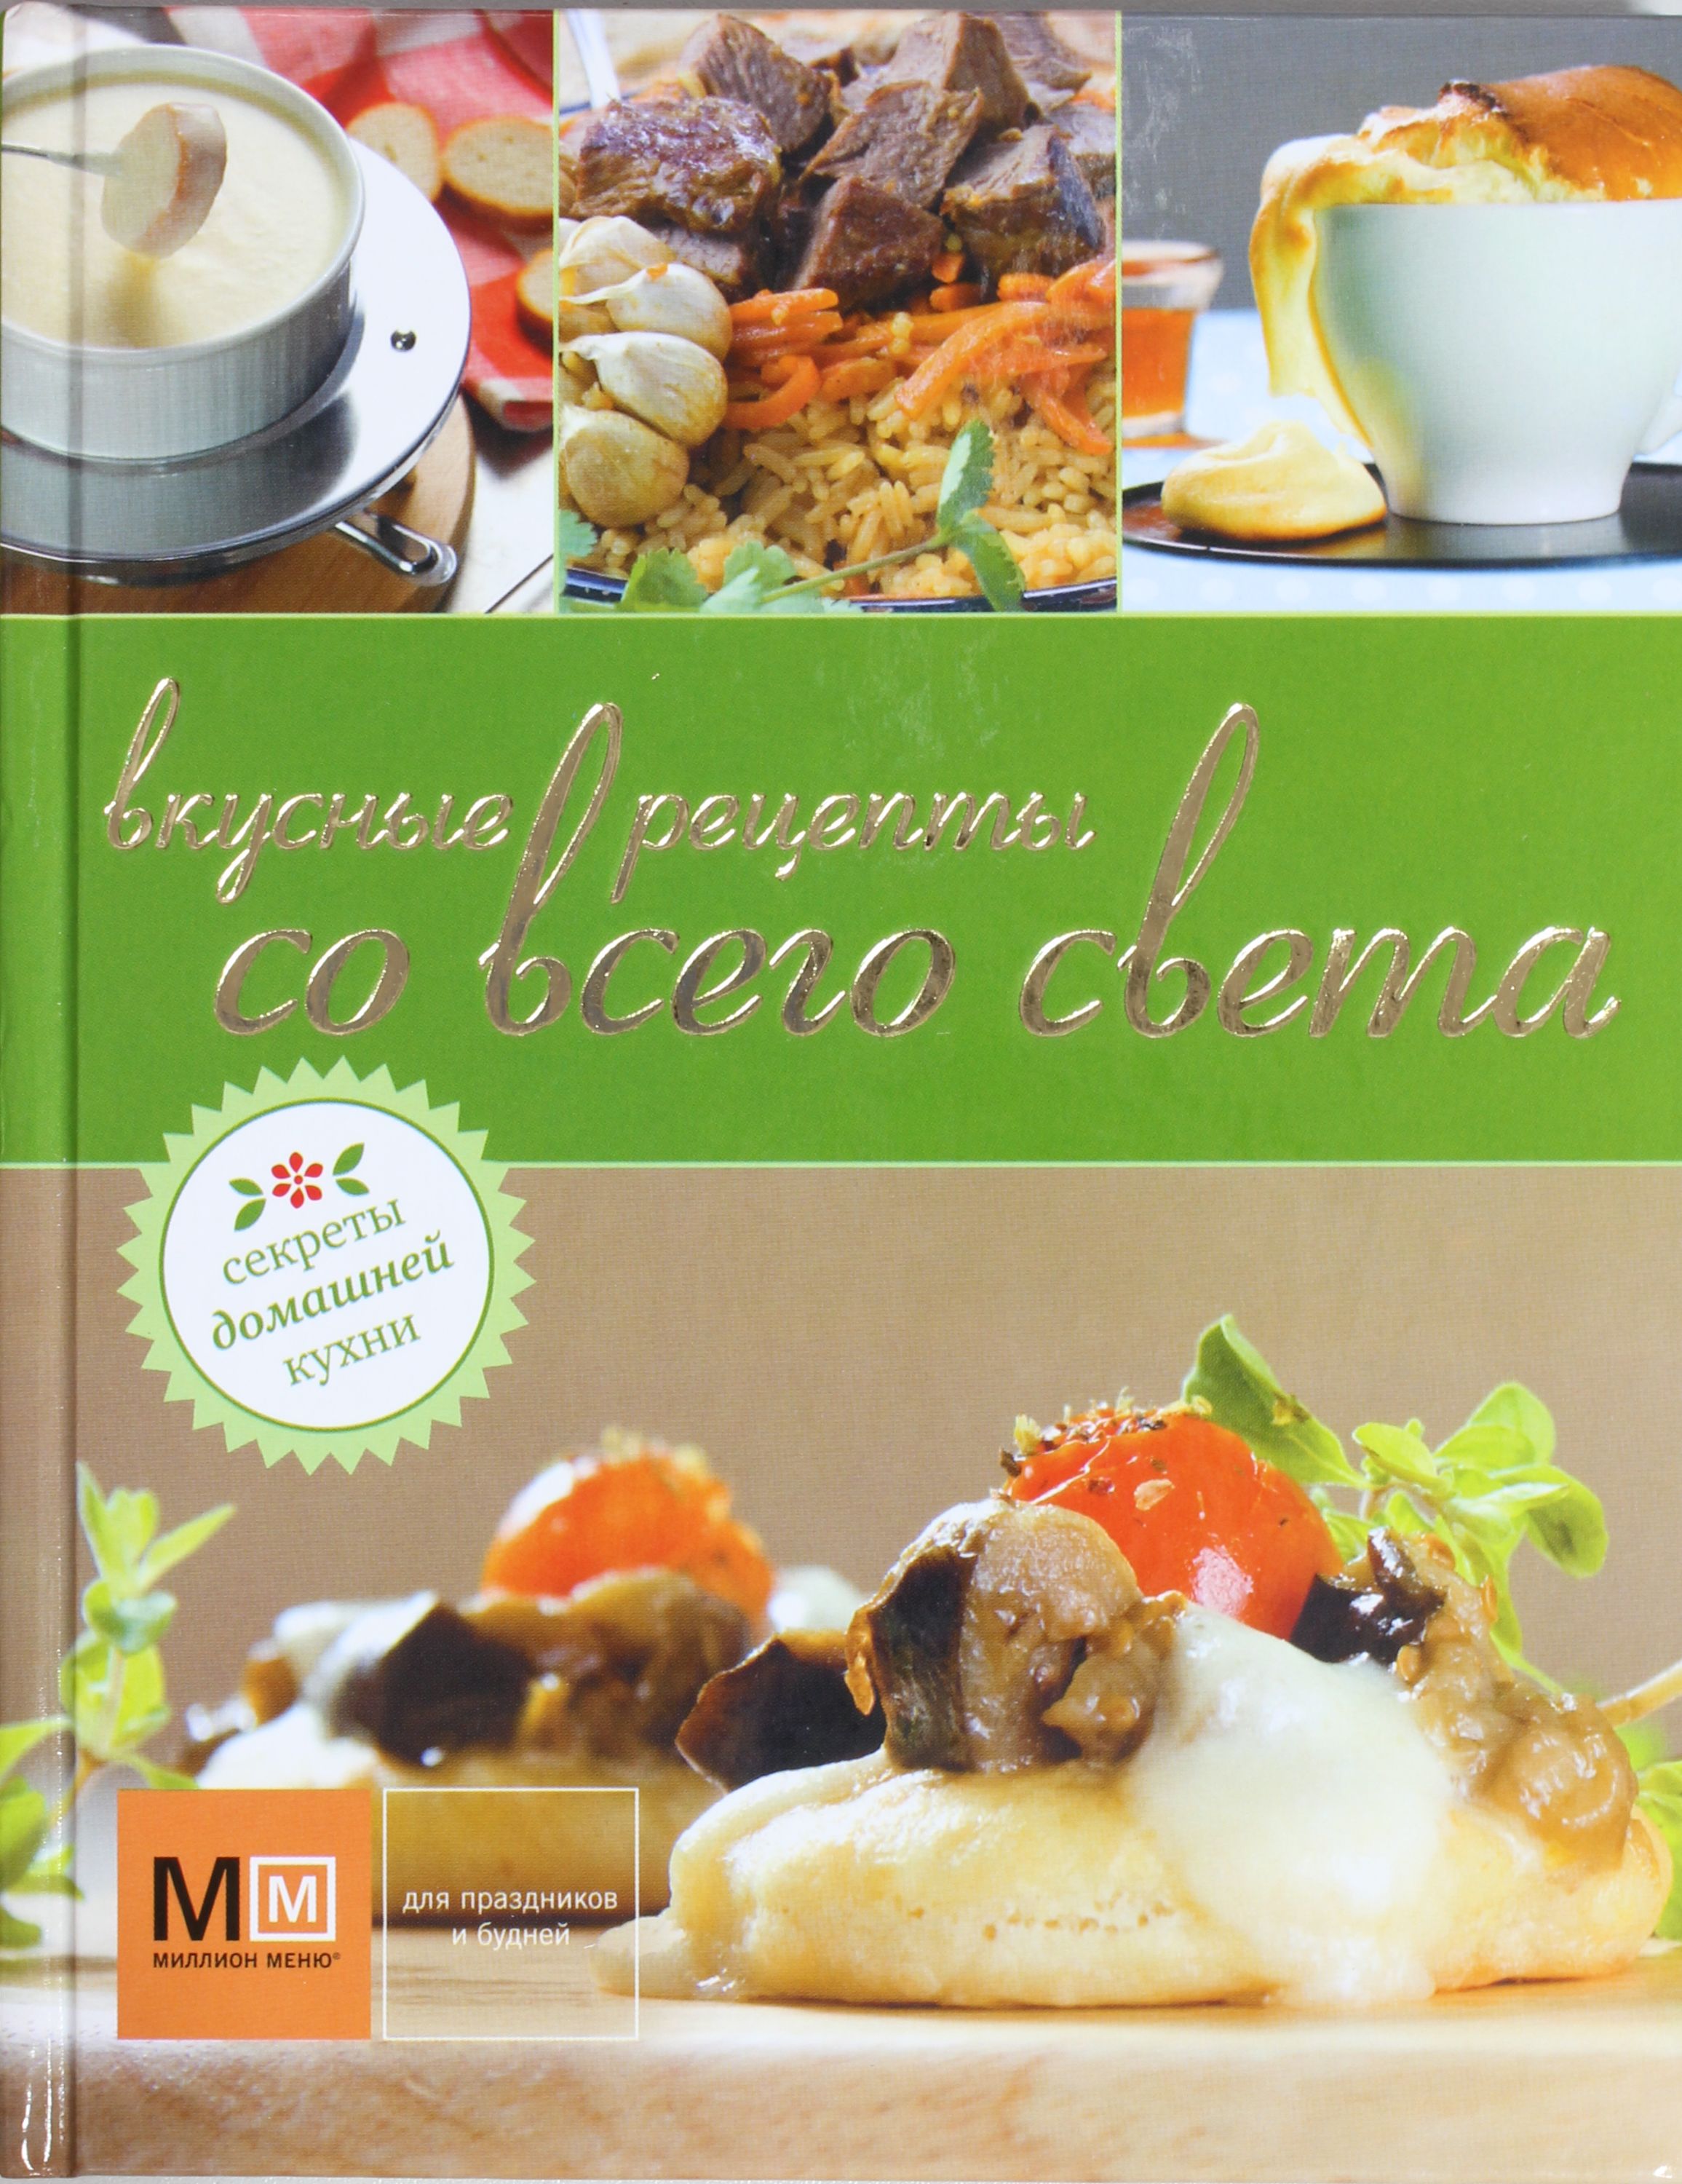 Вкусная книга любимой. Книга рецепты со всего света. Вкусные Кулинарные рецепты обложка. Секреты домашней кухни книга. Книга тайны домашней кухни.